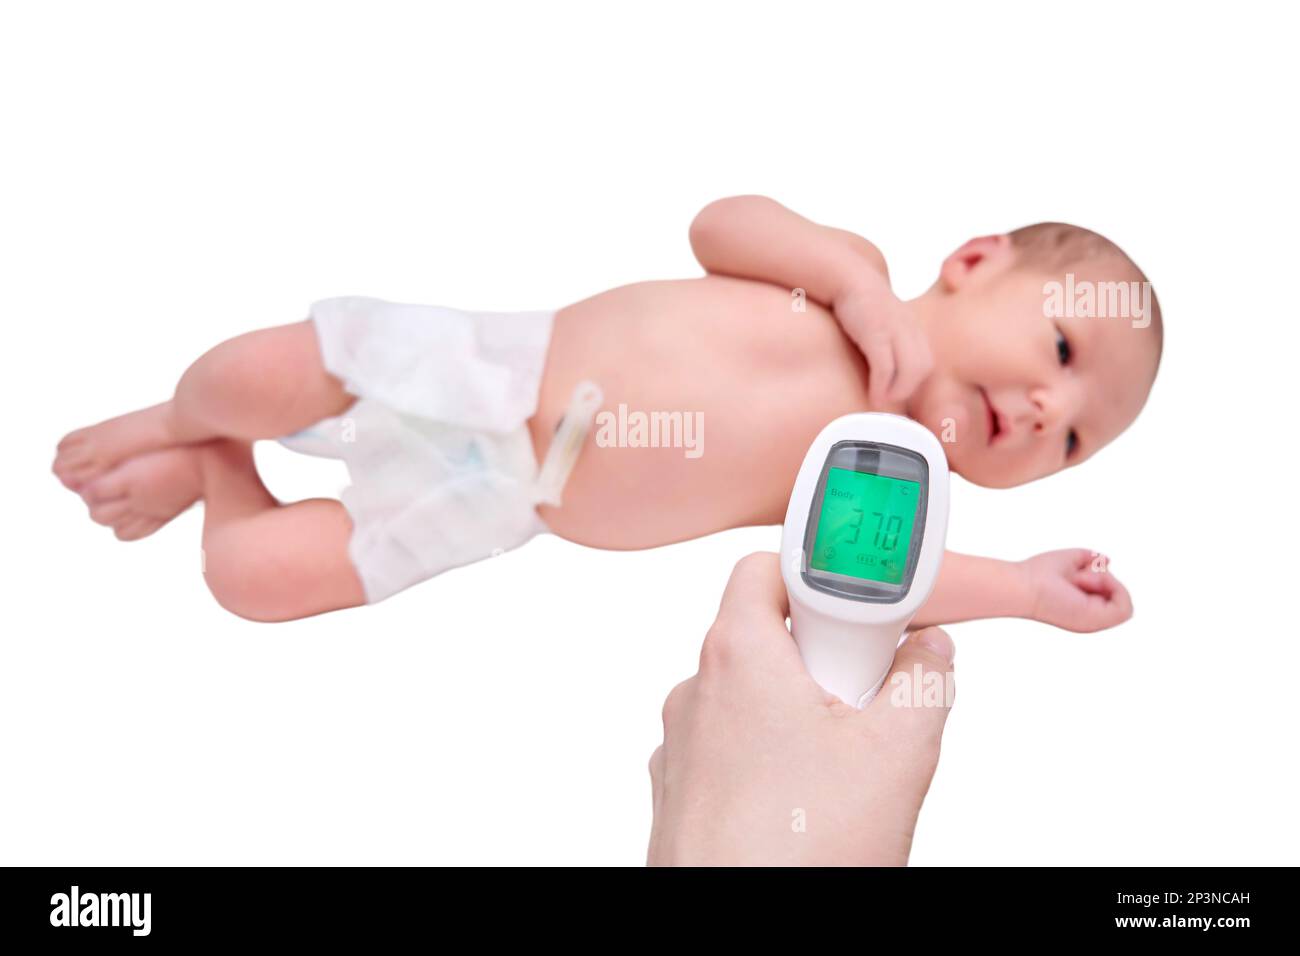 La mamma misura la temperatura corporea di un neonato con un termometro  senza contatto, isolato su sfondo bianco Foto stock - Alamy